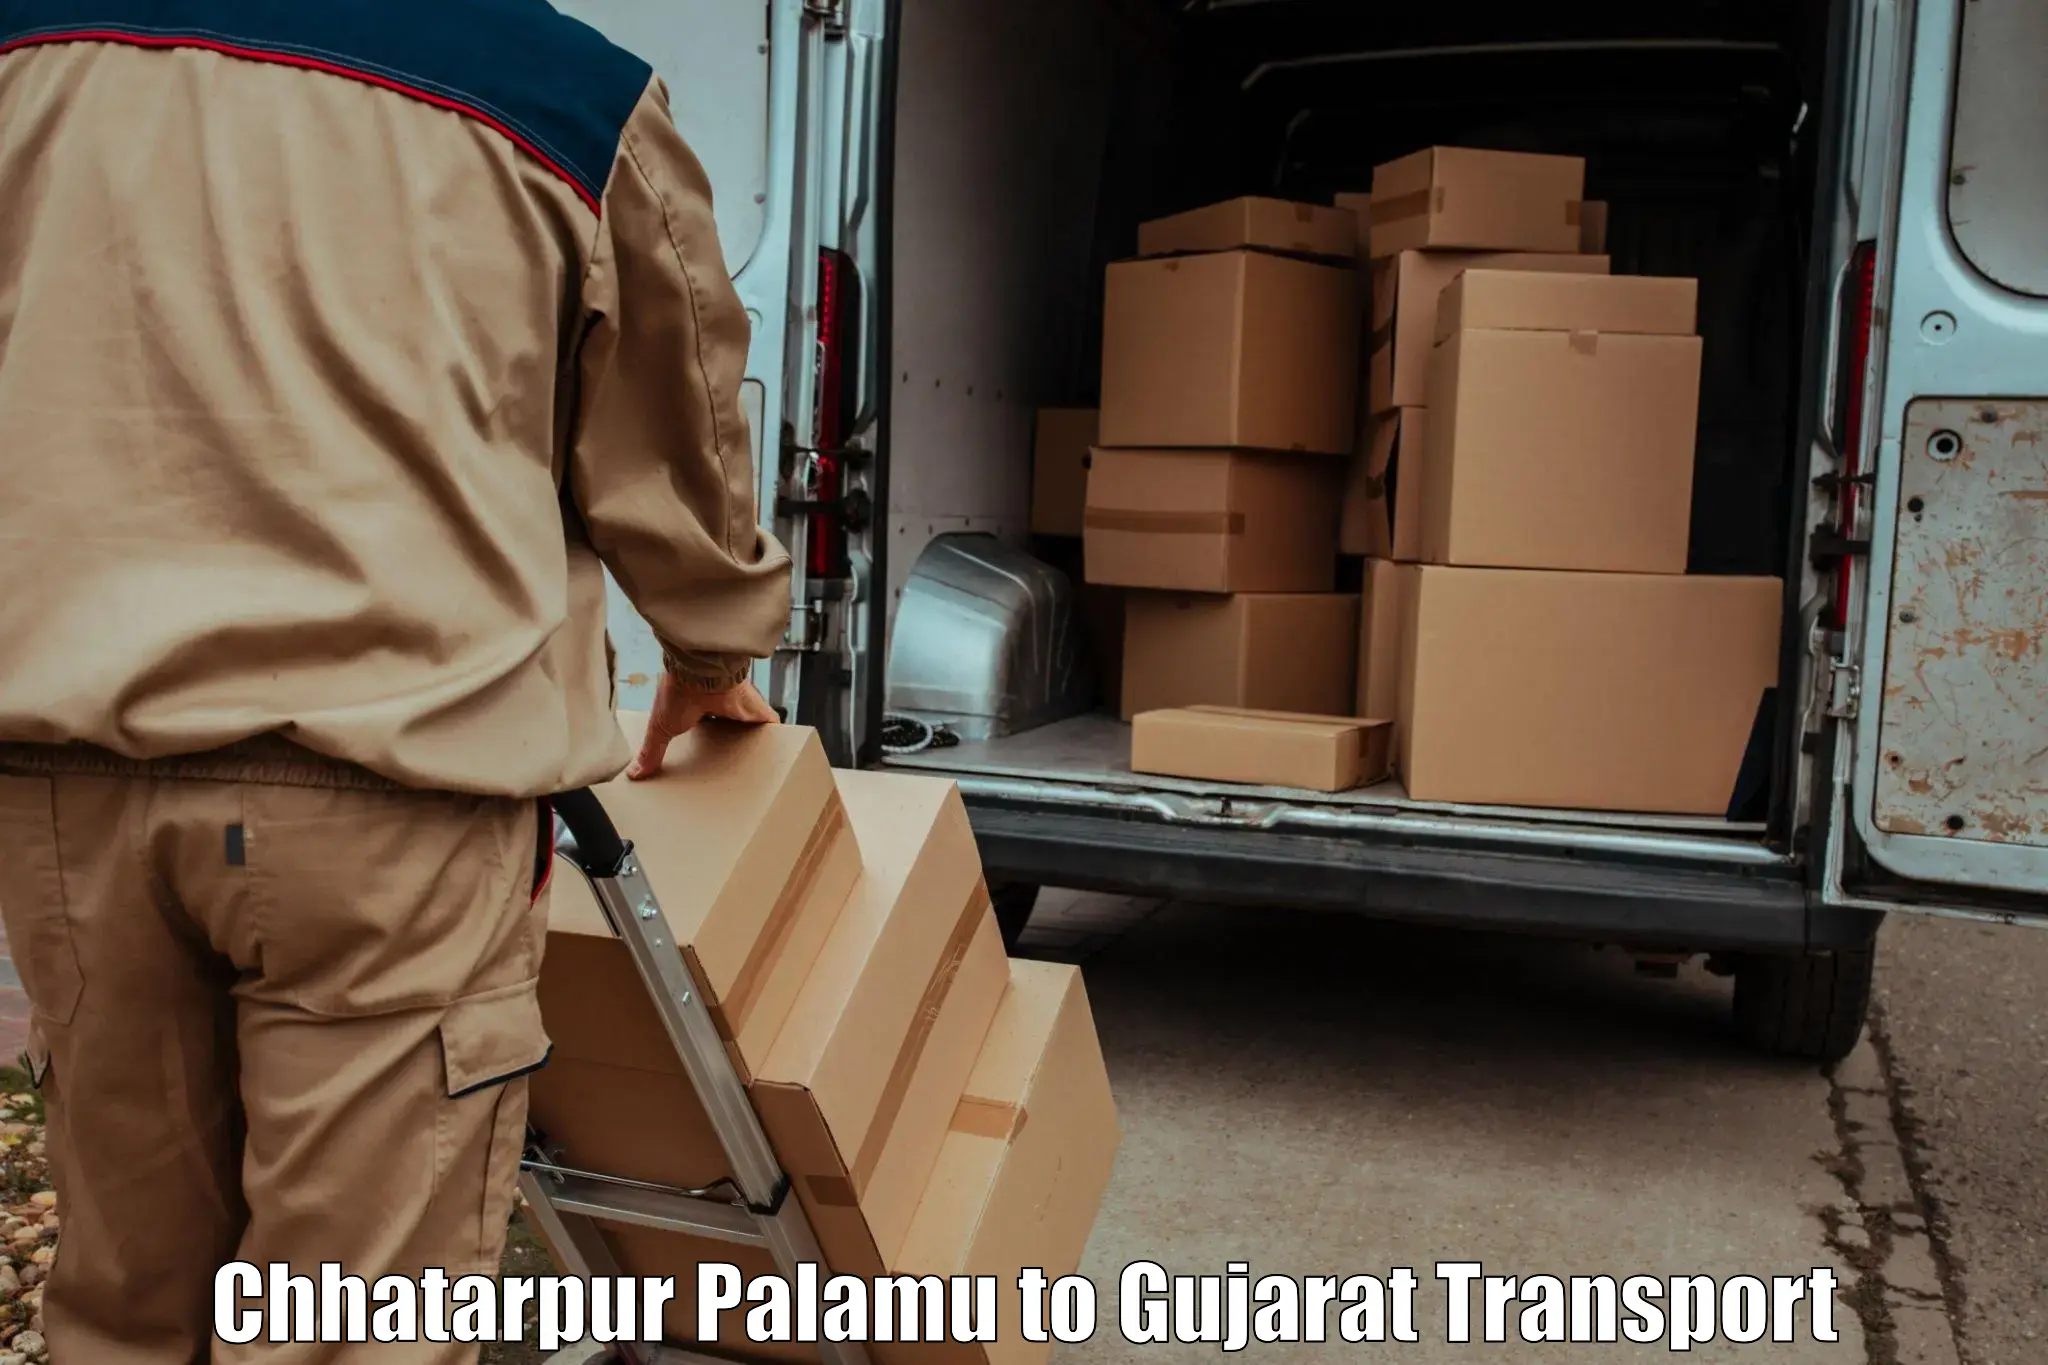 Vehicle parcel service Chhatarpur Palamu to Dharampur Valsad